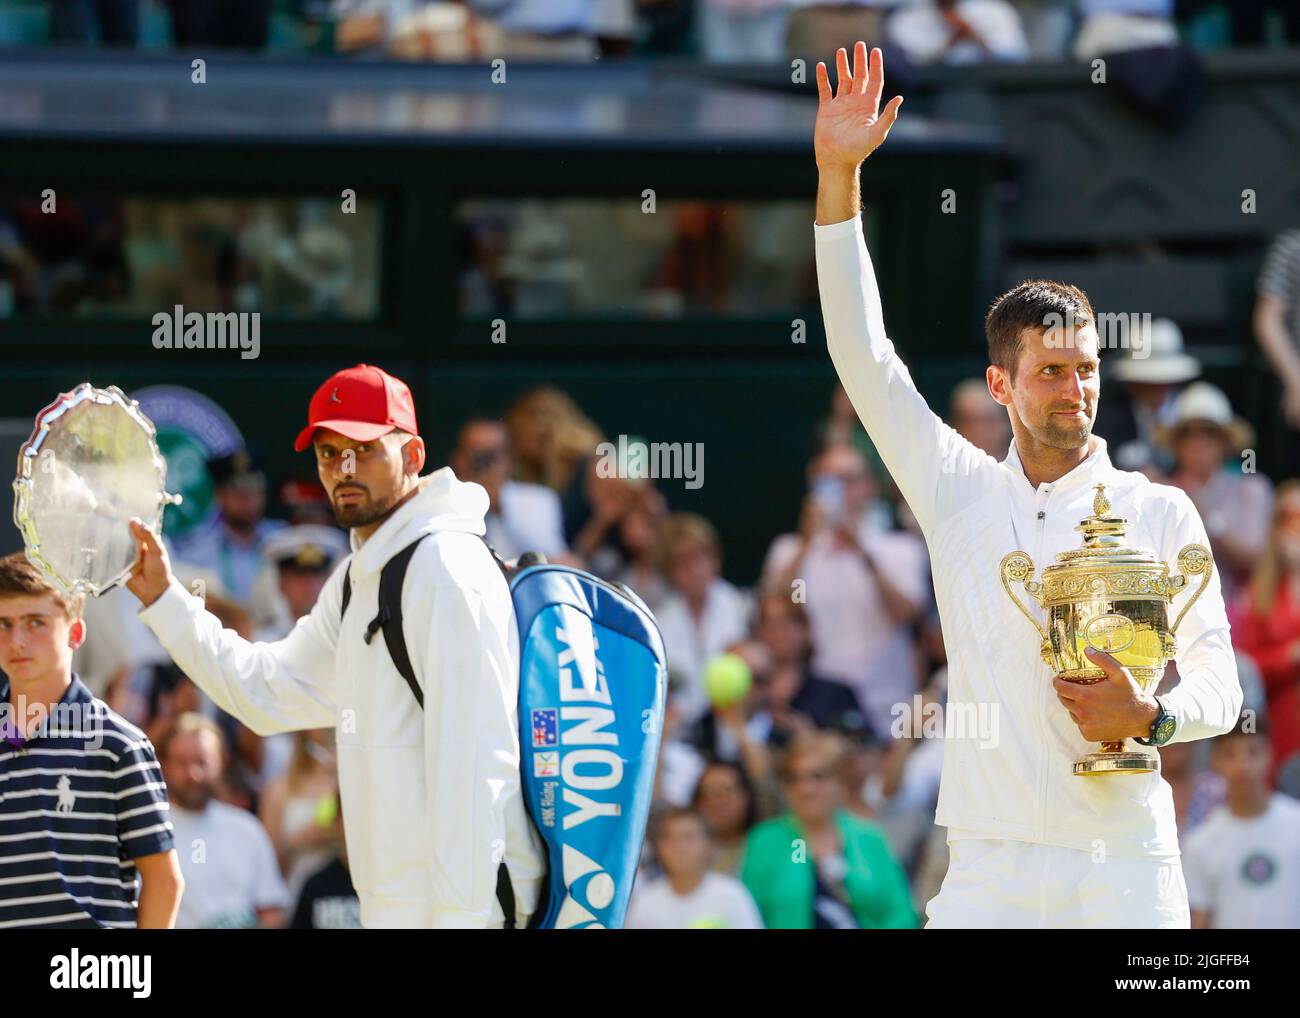 Wimbledon, Gran Bretaña 10th. Julio, 2022. El campeón Novak Djokovic y el subcampeón Nick Kyrgios durante la presentación en el Campeonato de Wimbledon 2022 el domingo 10 de julio de 2022., © Juergen Hasenkopf / Alamy Live News Foto de stock